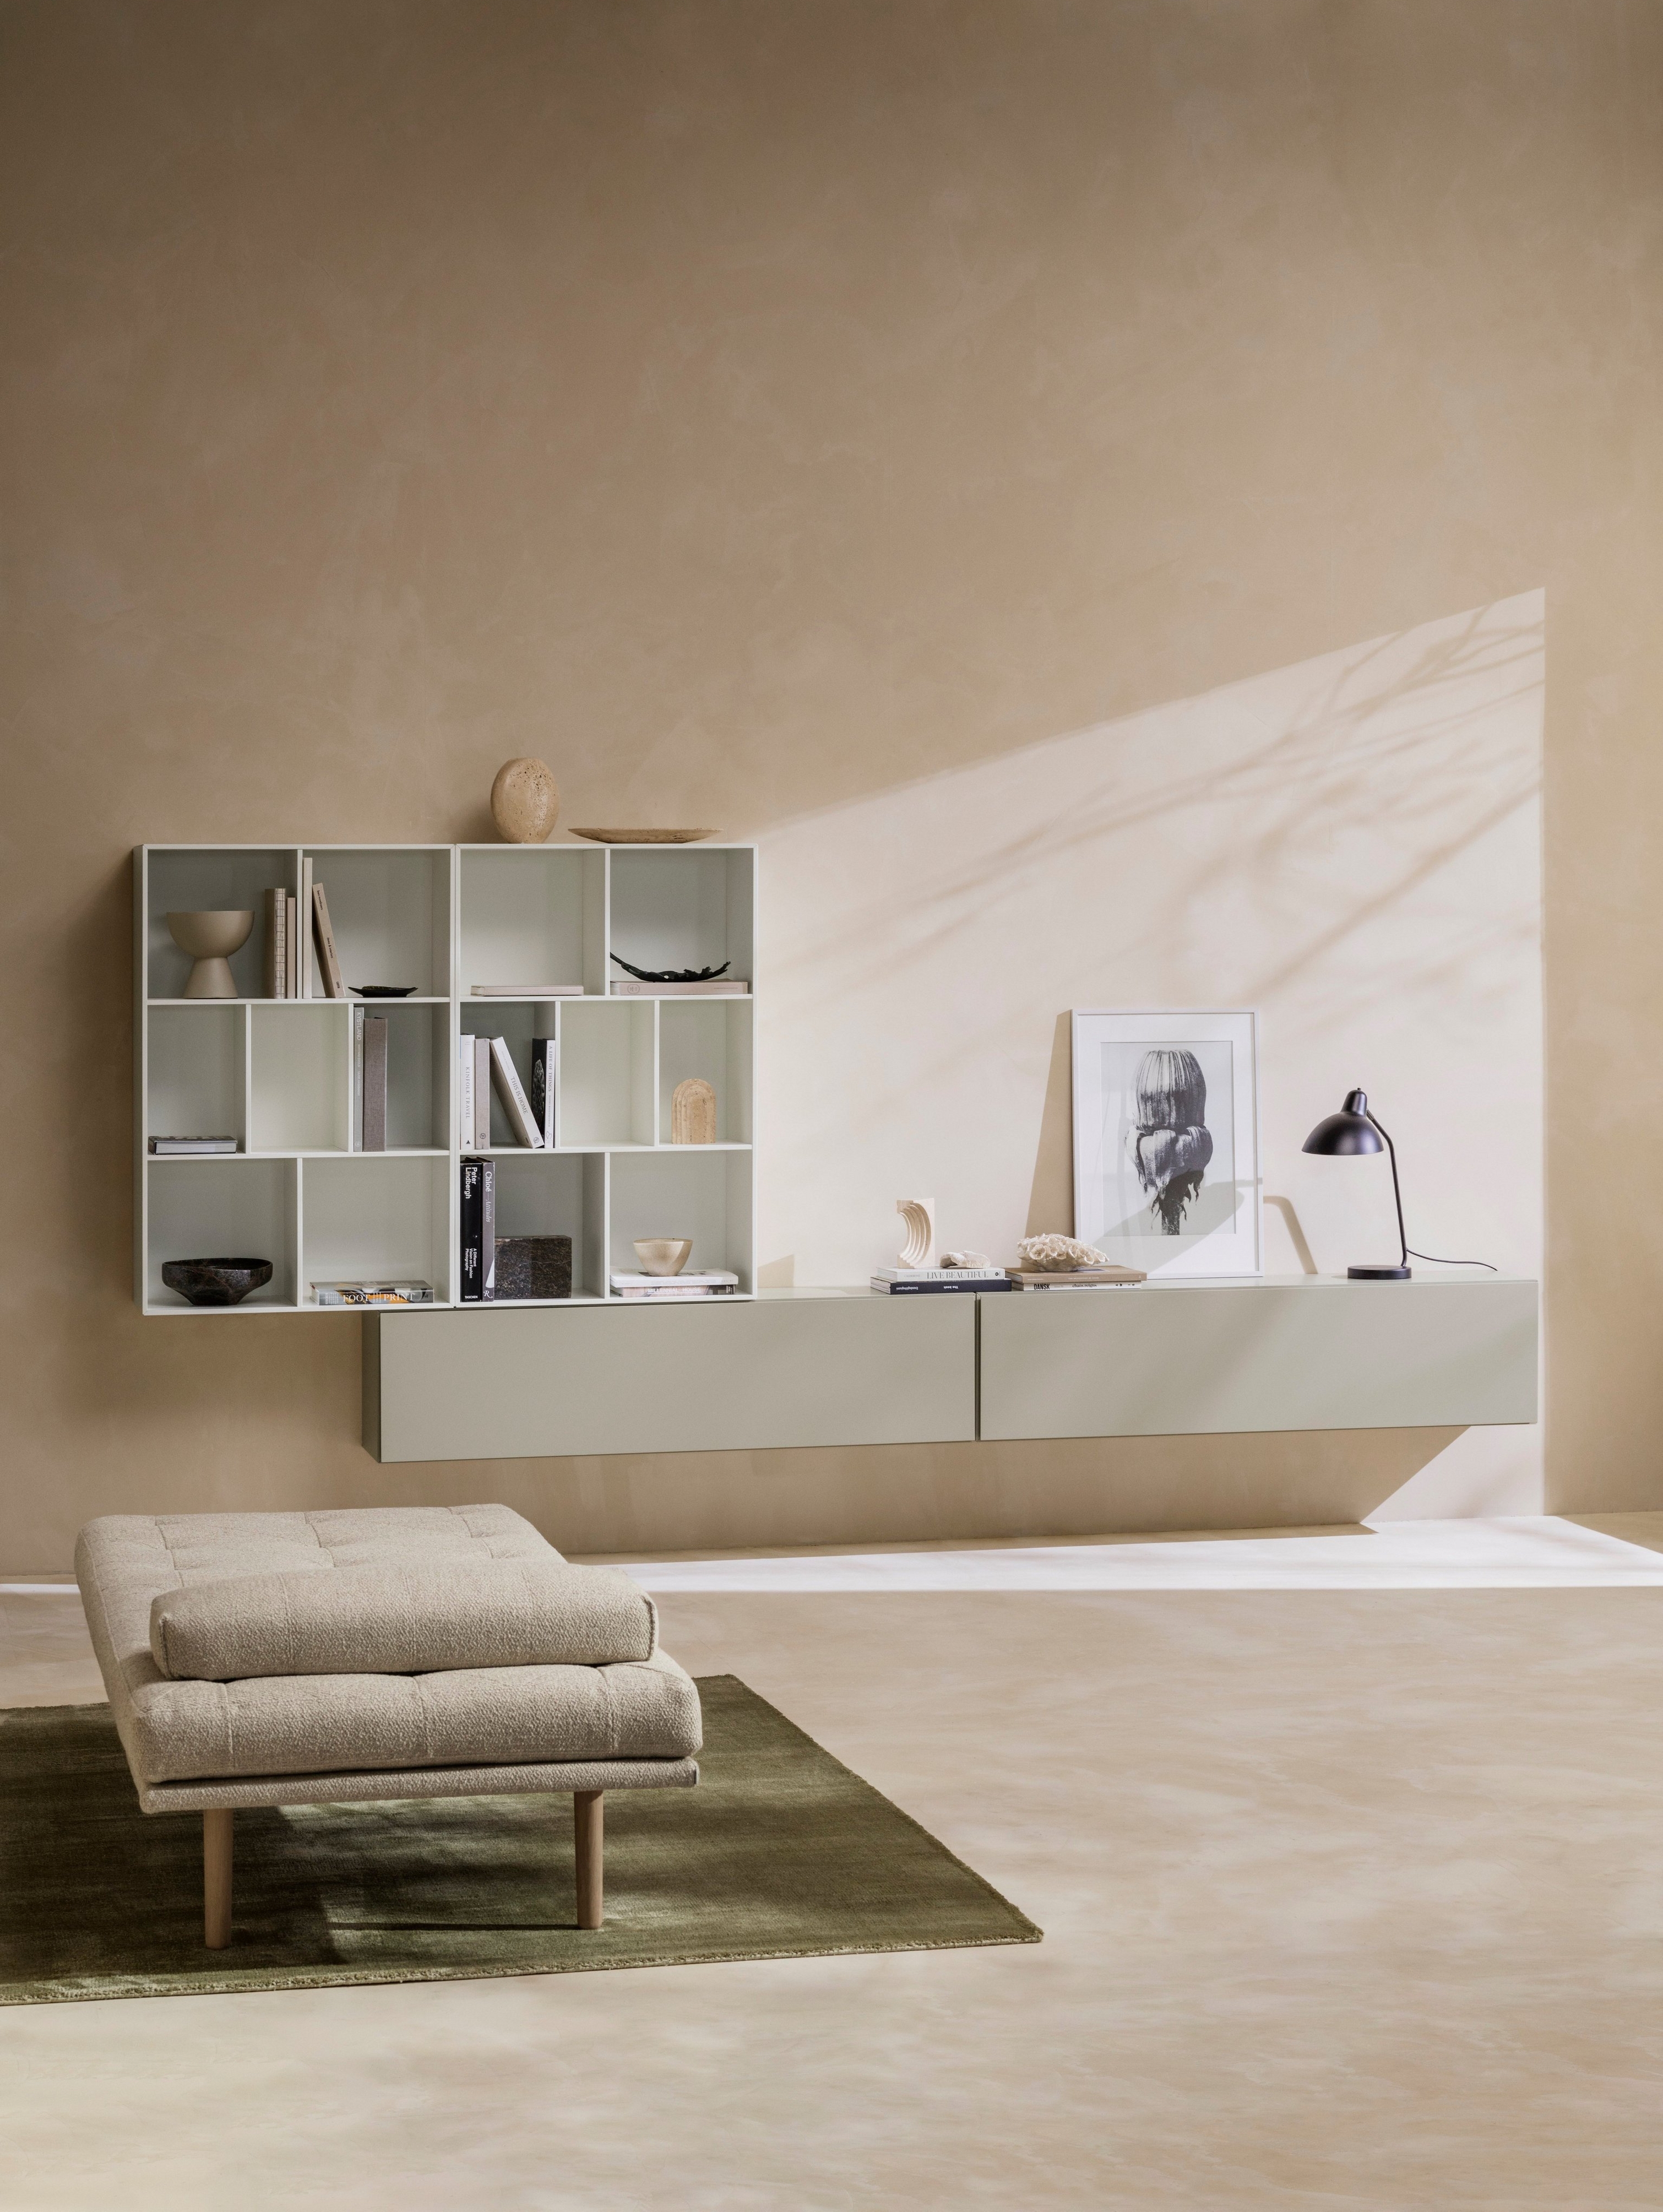 Uma sala de estar de estilo Japandi com a chaiselongue Fusion e os sistemas de arrumação Lugano e Como.